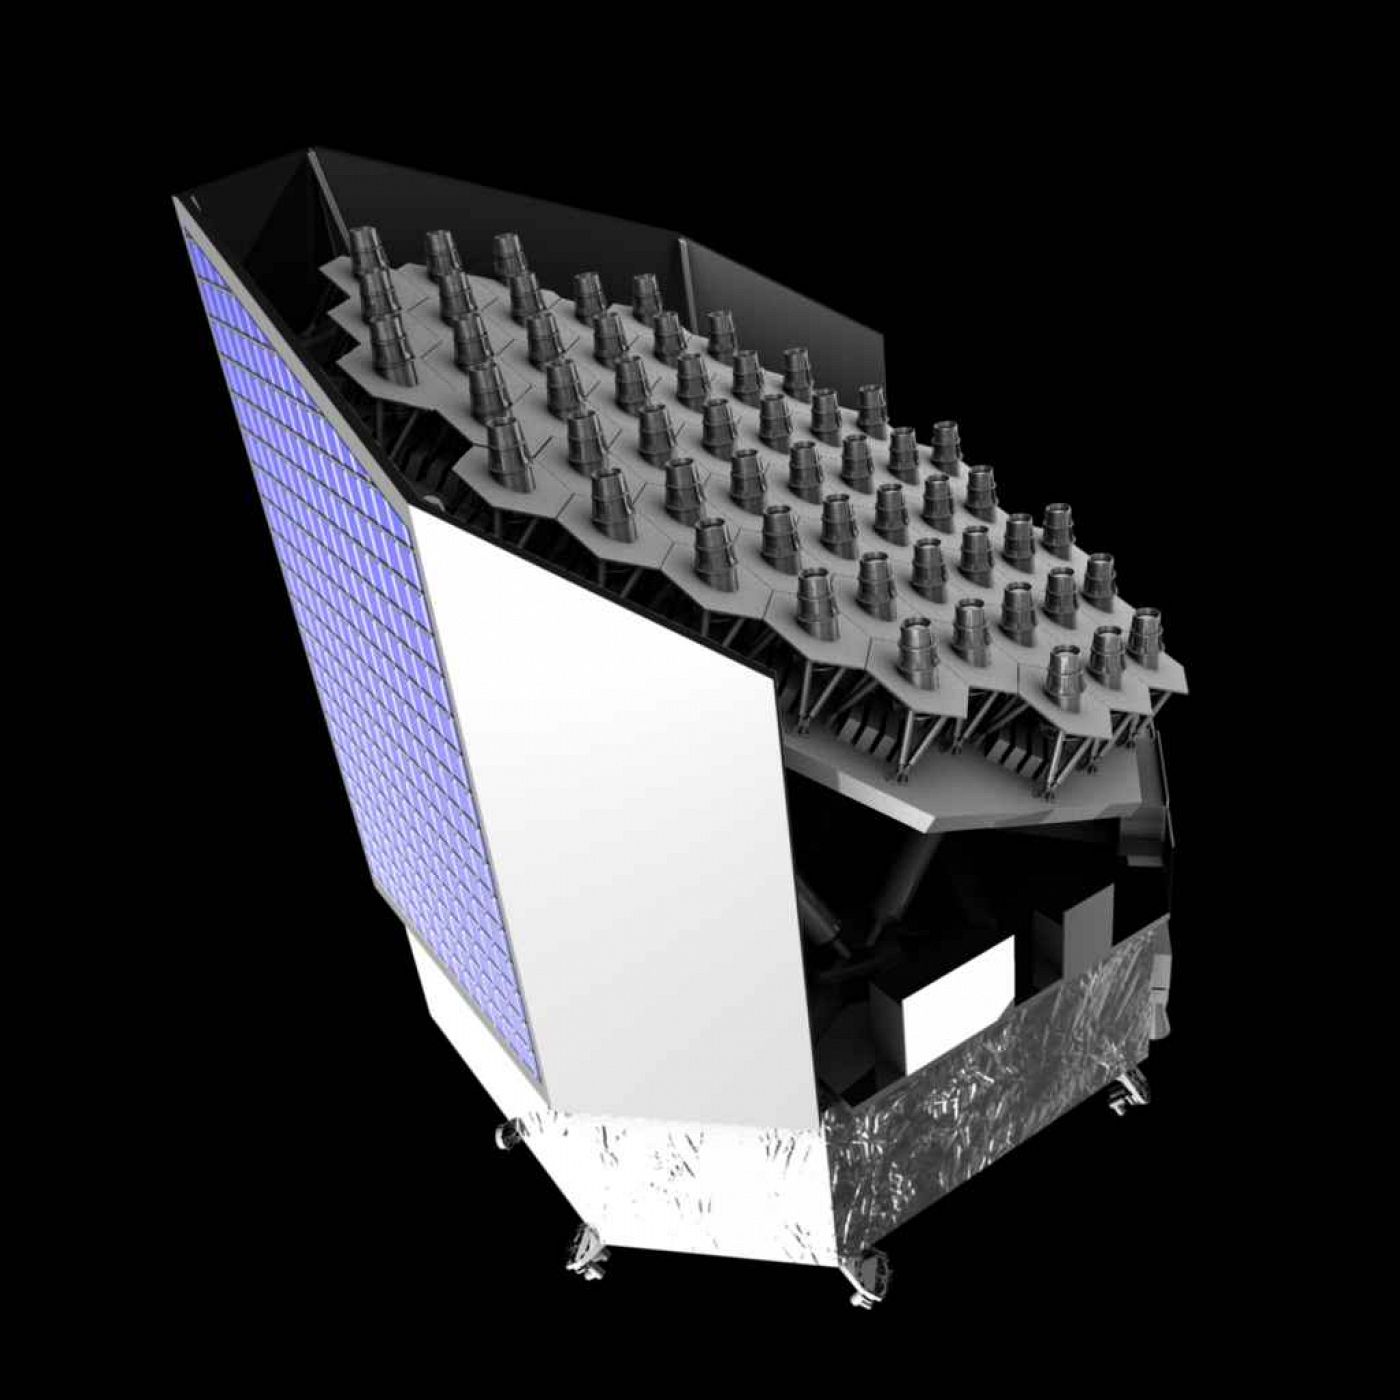 Impresión artística del nuevo telescopio espacial